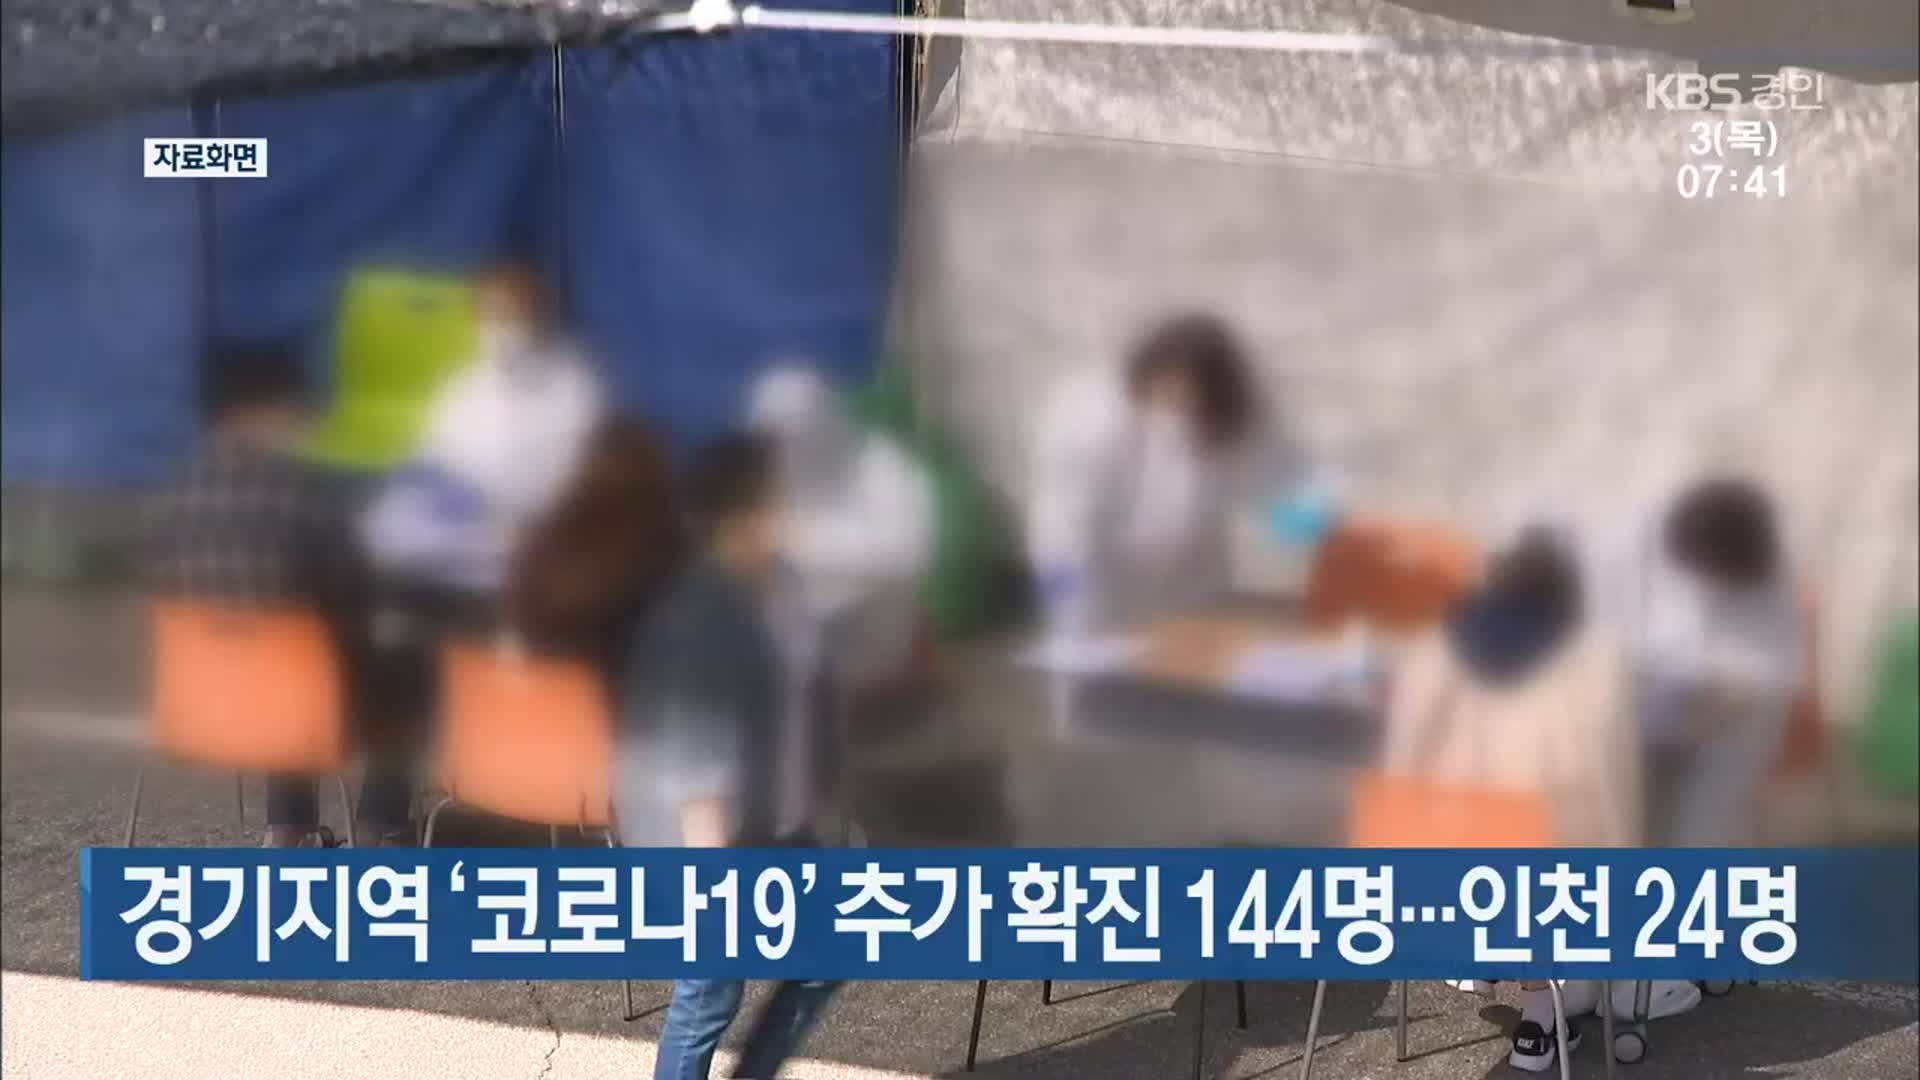 경기지역 ‘코로나19’ 추가 확진 144명…인천 24명